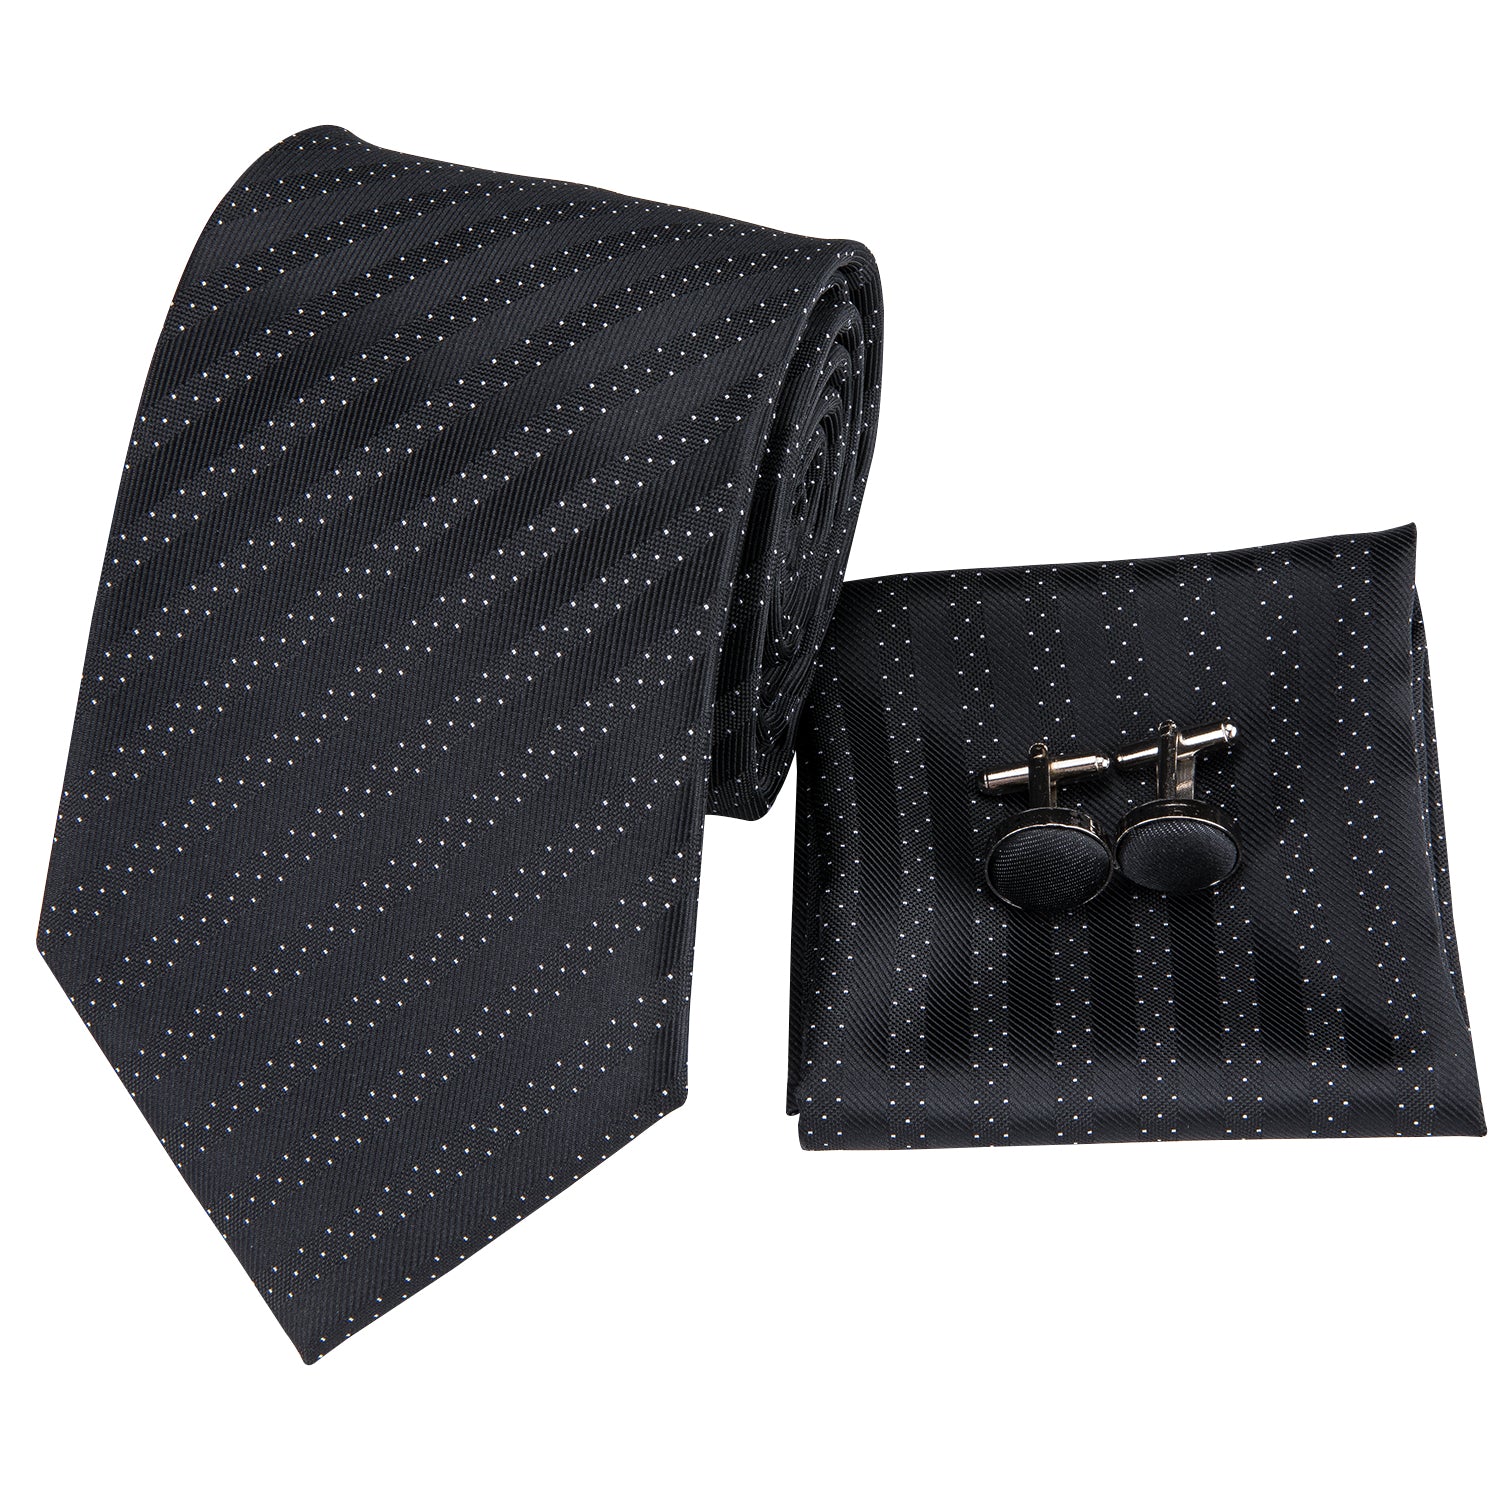 Black Polka Dot Striped Men's Tie Pocket Square Cufflinks Set